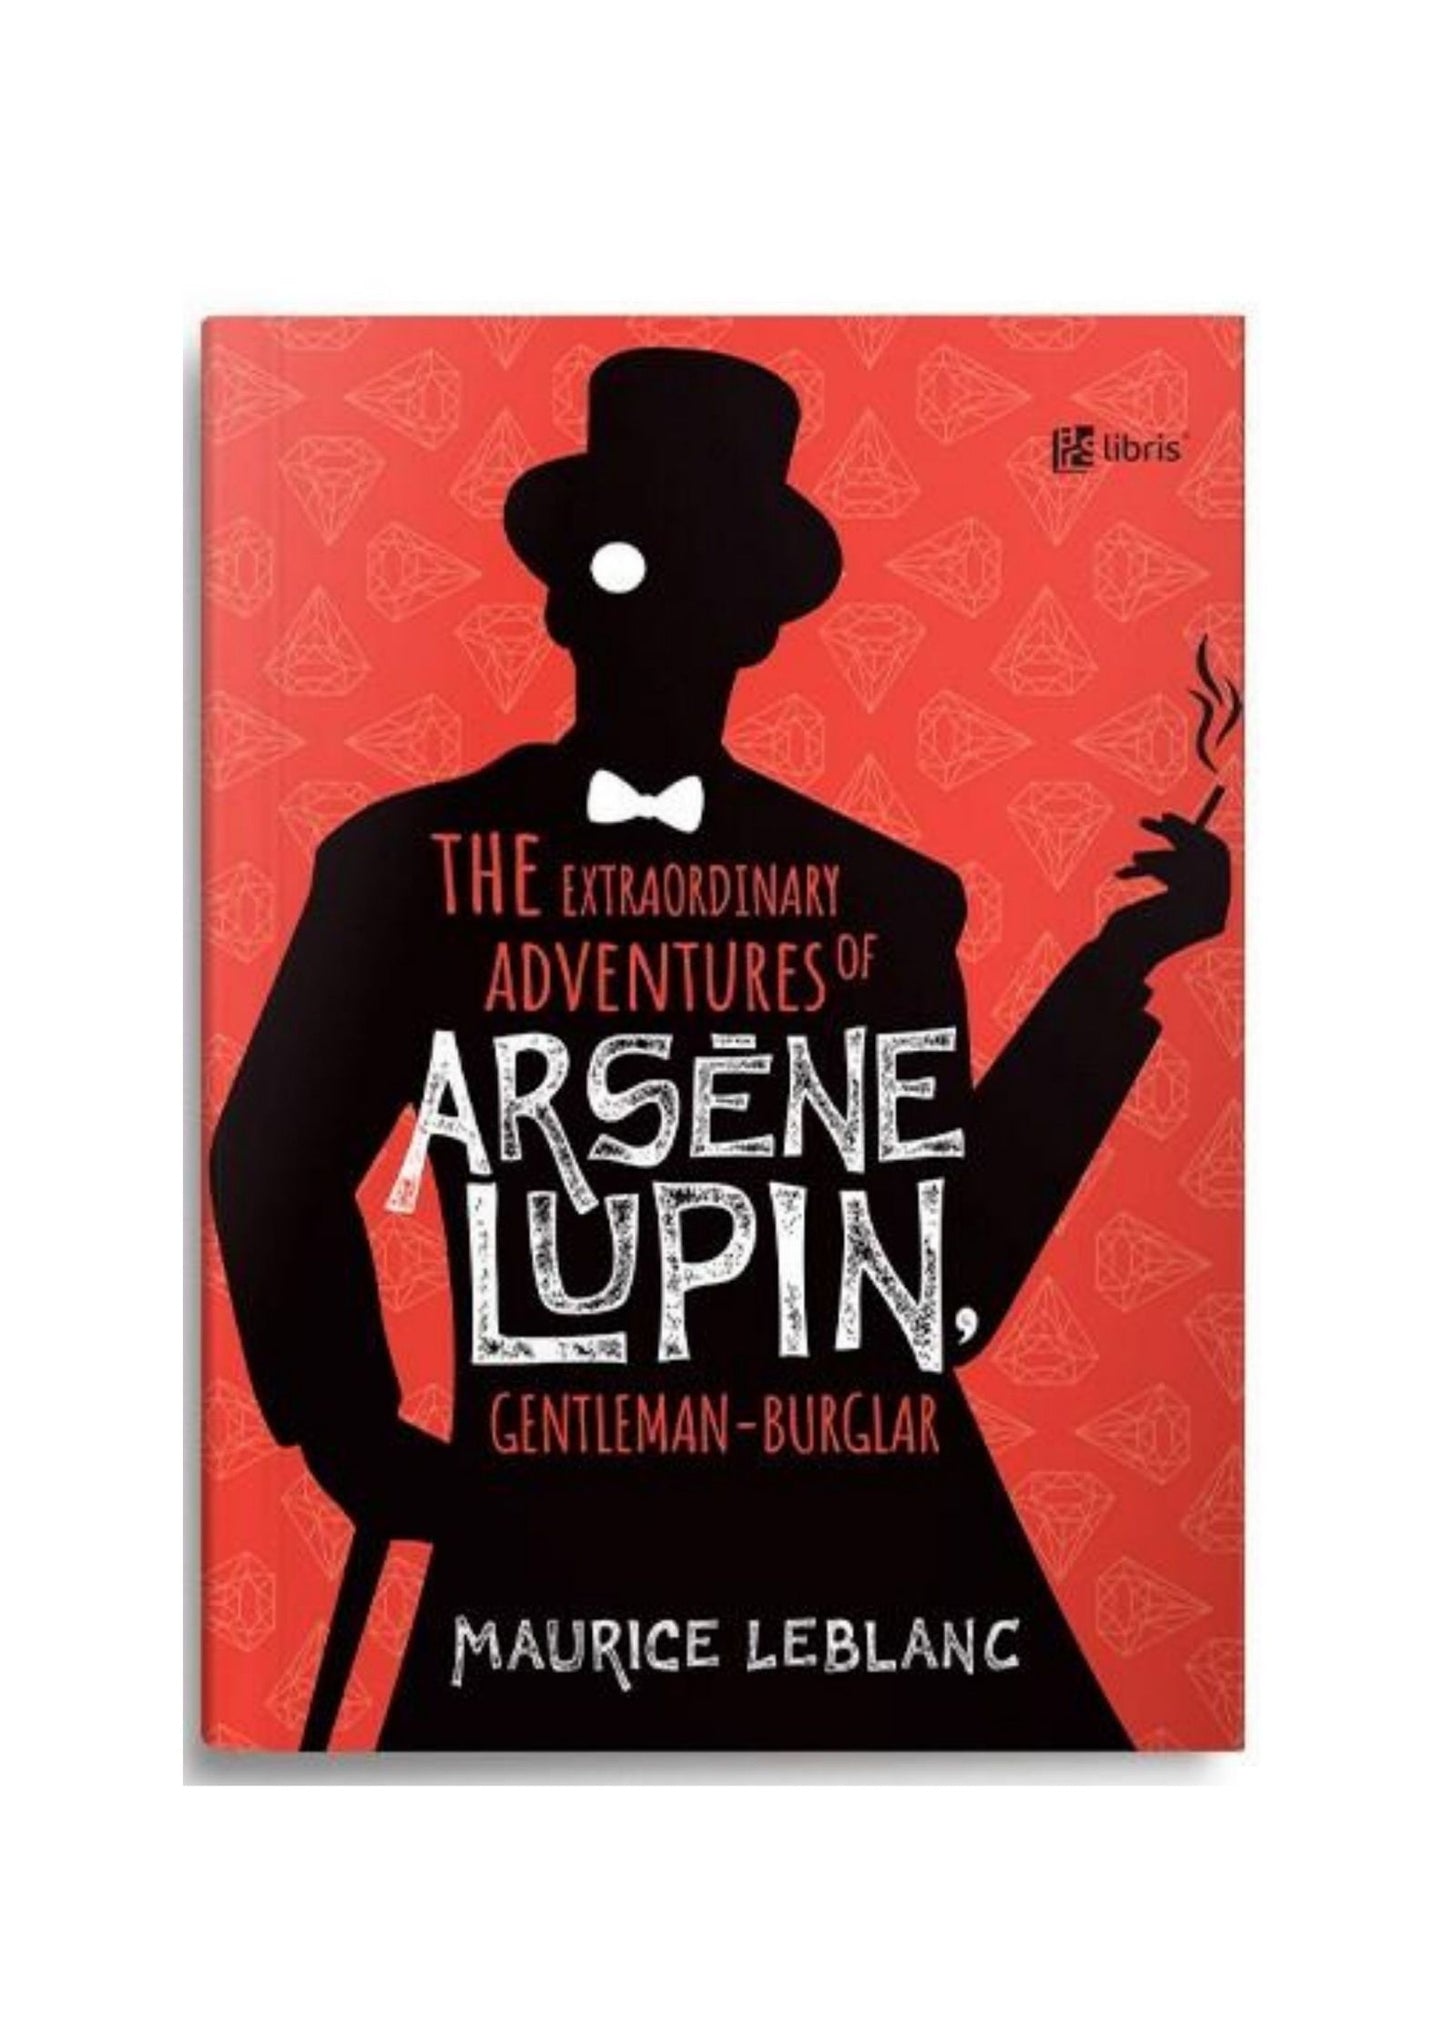 The extraordinary adventures of Arsène Lupin, gentleman-burglar